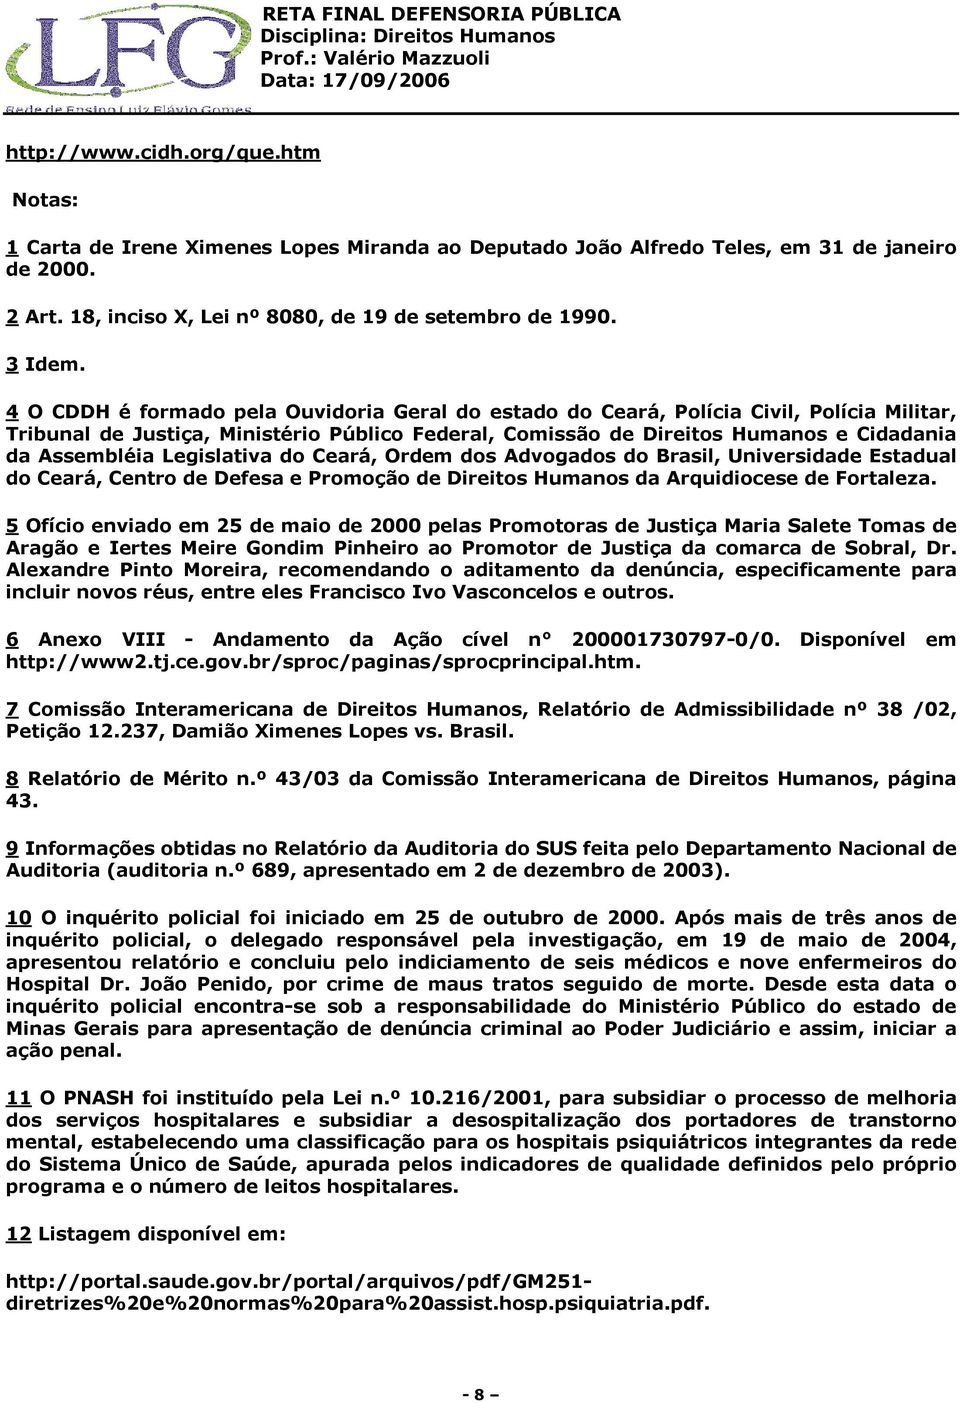 Legislativa do Ceará, Ordem dos Advogados do Brasil, Universidade Estadual do Ceará, Centro de Defesa e Promoção de Direitos Humanos da Arquidiocese de Fortaleza.